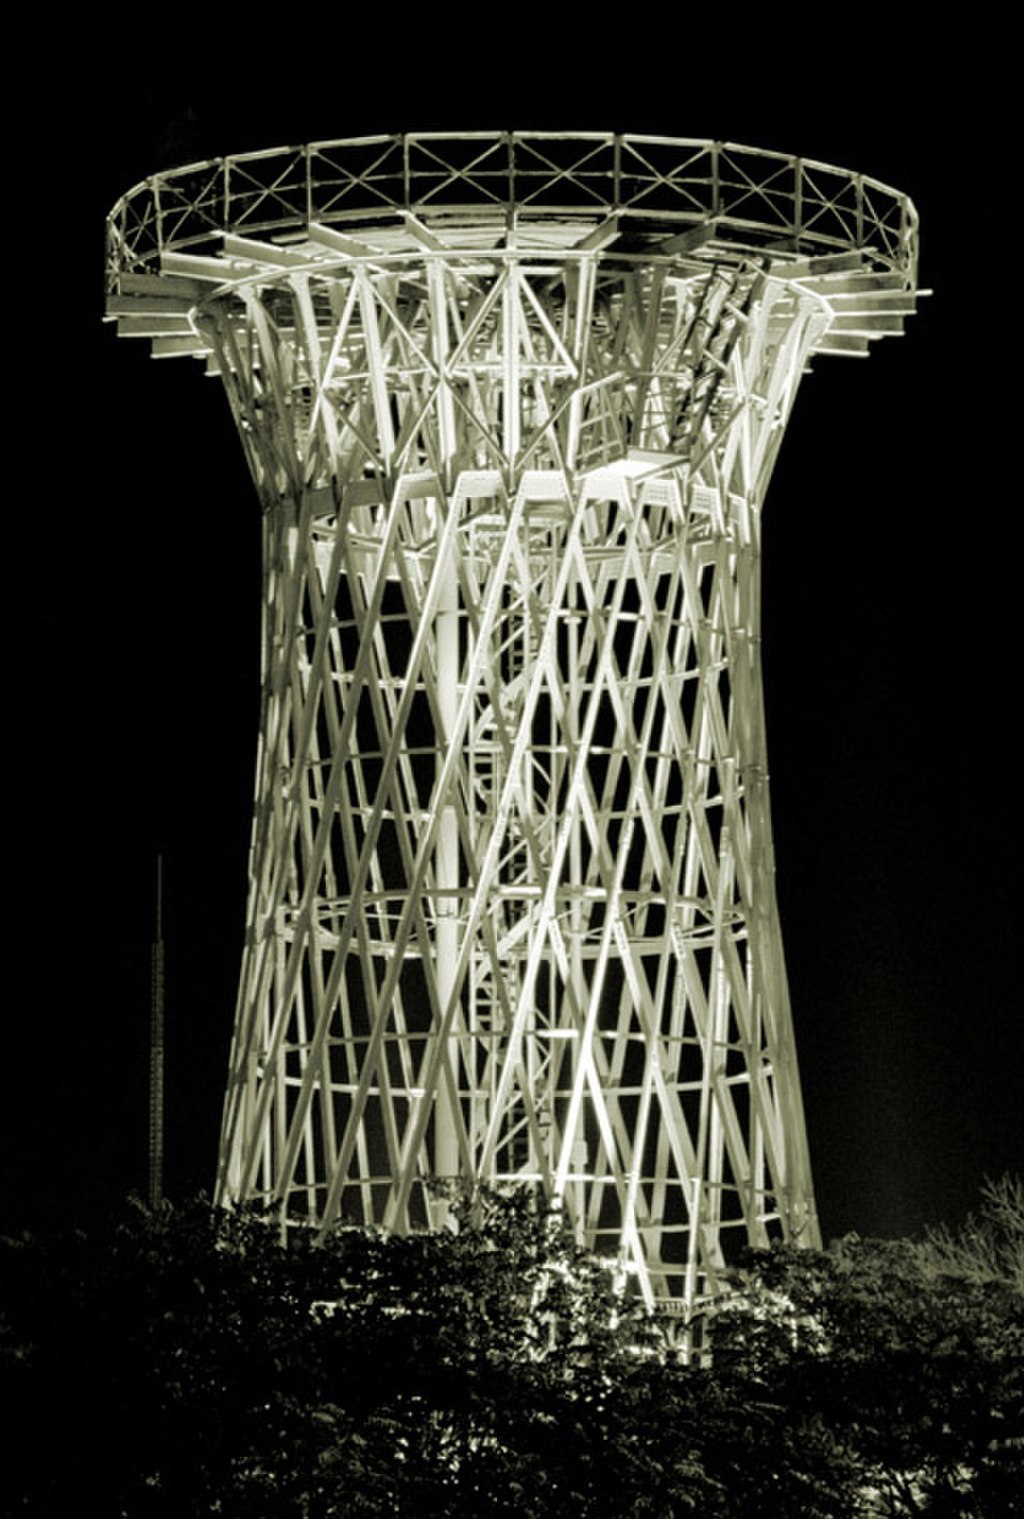 шуховская башня краснодар